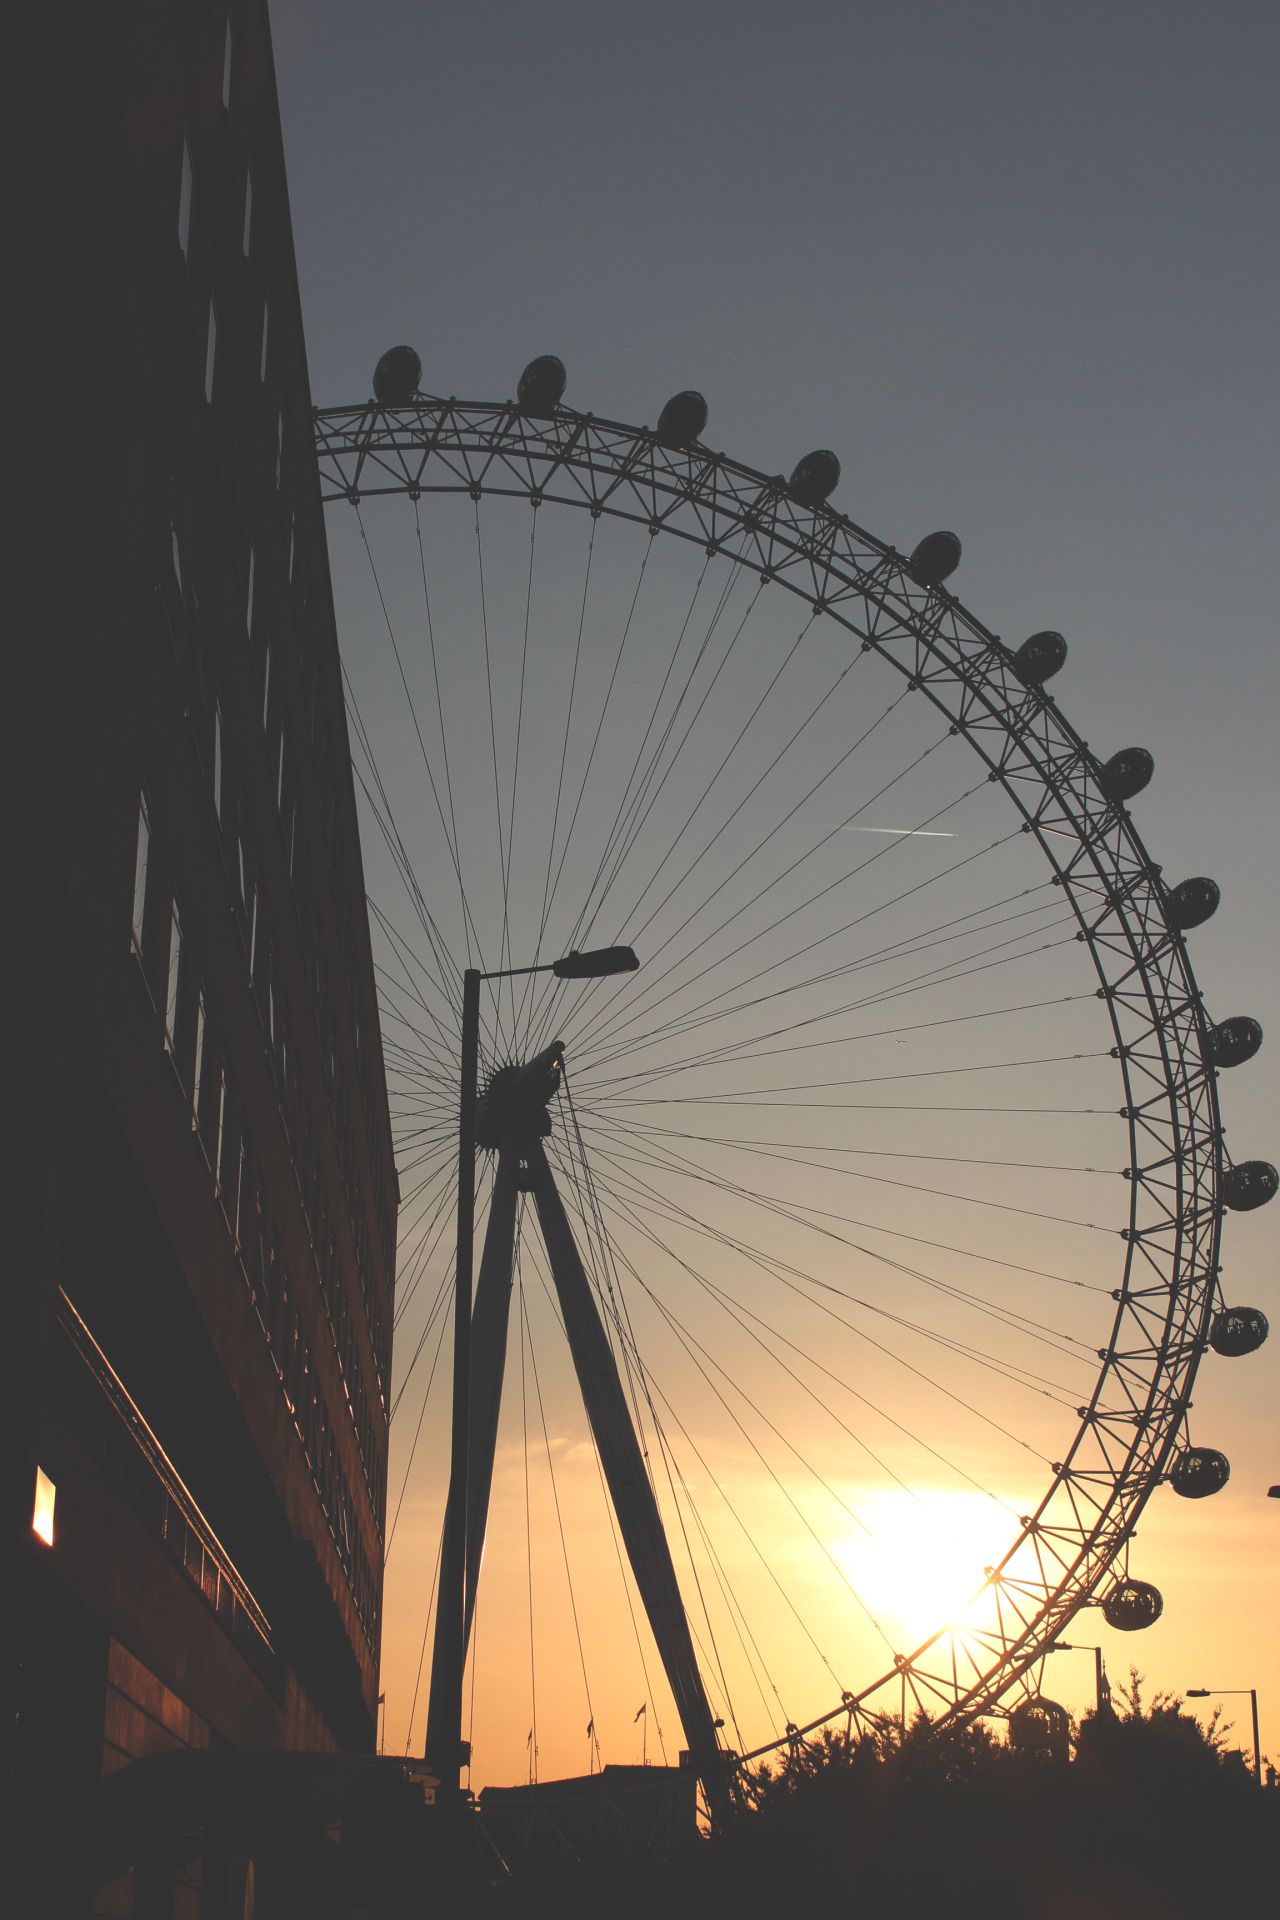 London Eye Wheel  Free photo on Pixabay  Pixabay